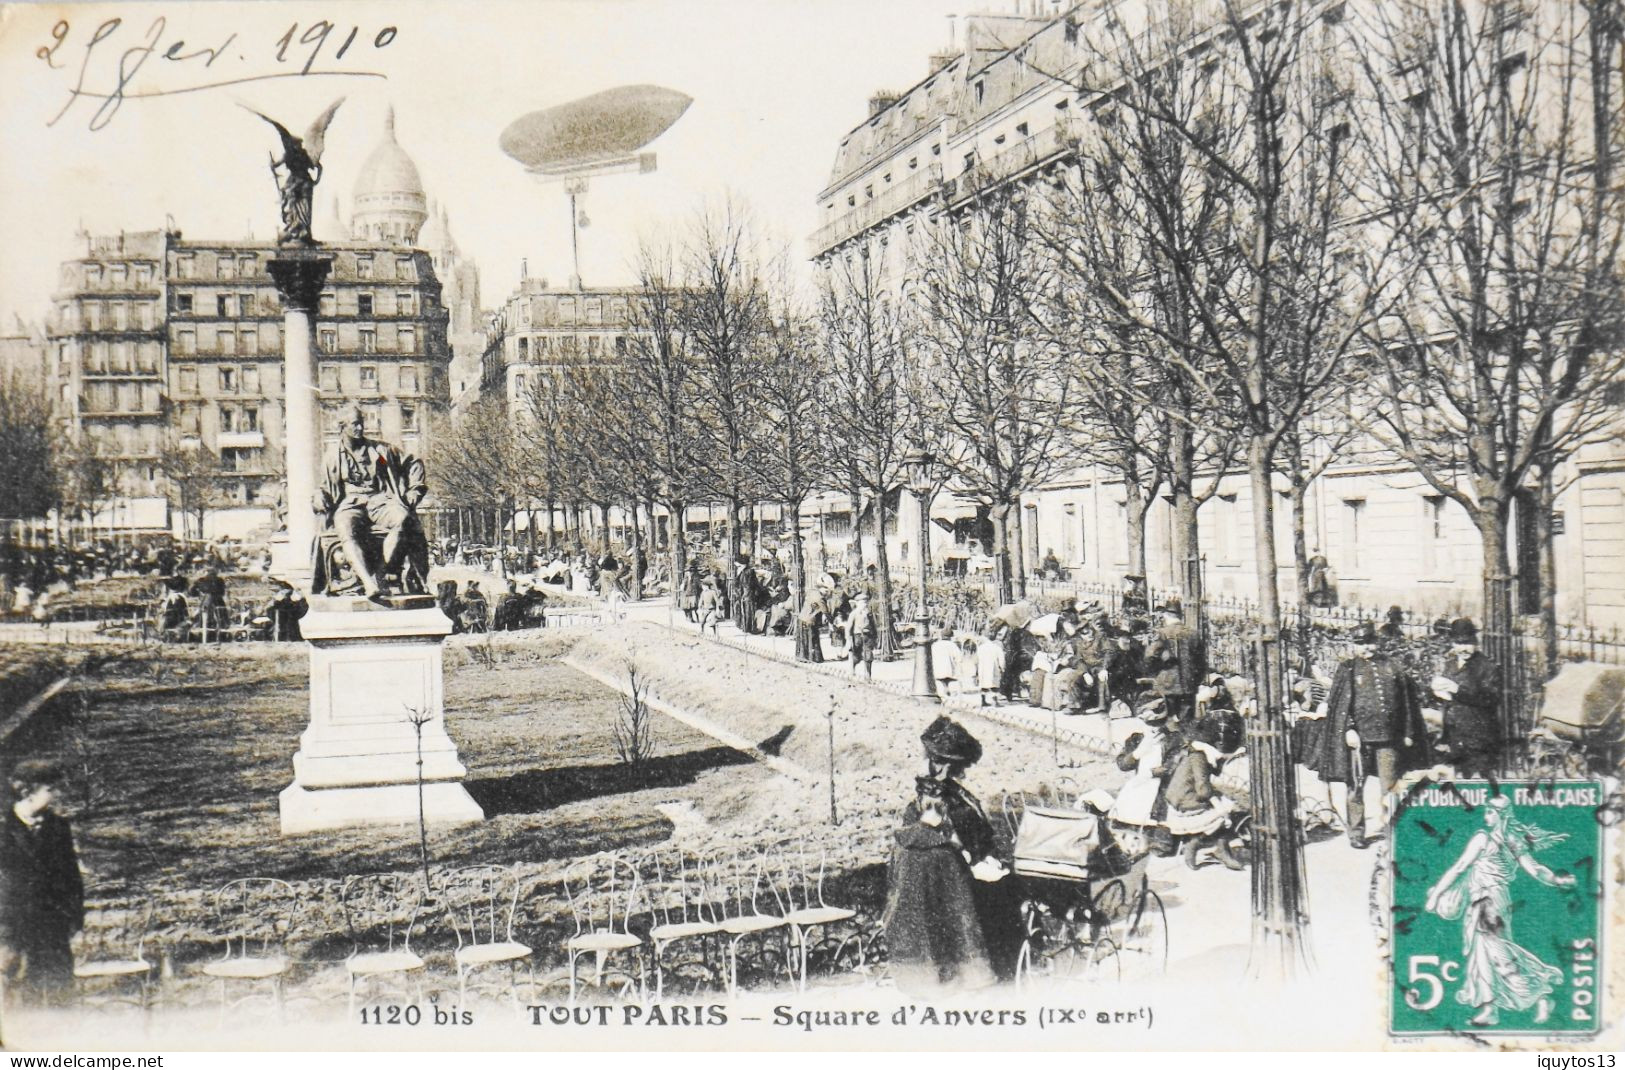 CPA. [75] > TOUT PARIS > N° 1120 Bis - Square D'Anvers - Belle Animation - (IXe Arrt.) - 1910 - TBE - Distretto: 09